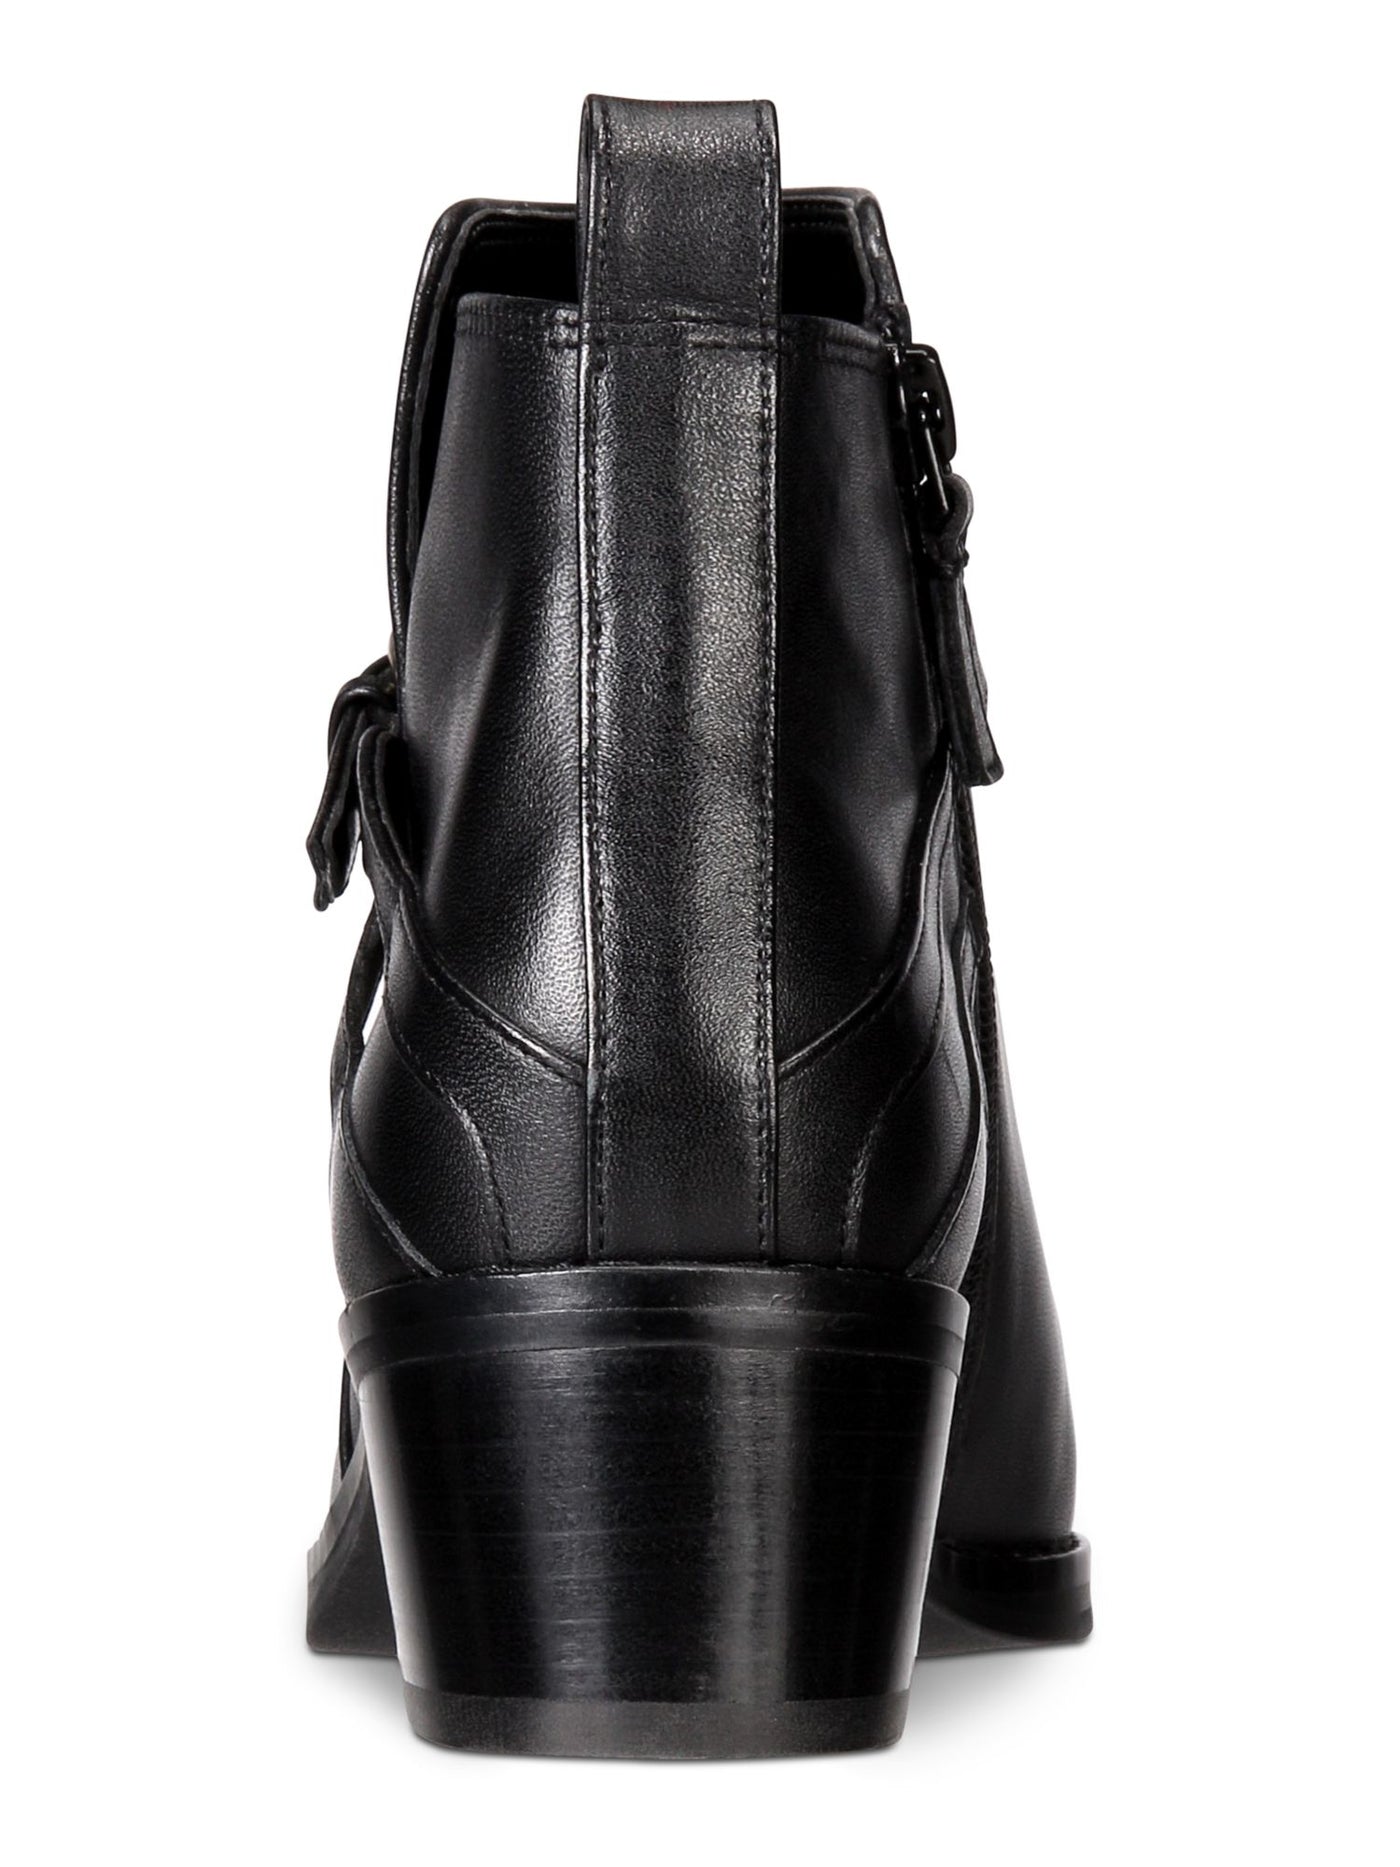 COLE HAAN Womens Black Adjustable Strap Etta Round Toe Block Heel Zip-Up Leather Booties 6.5 B